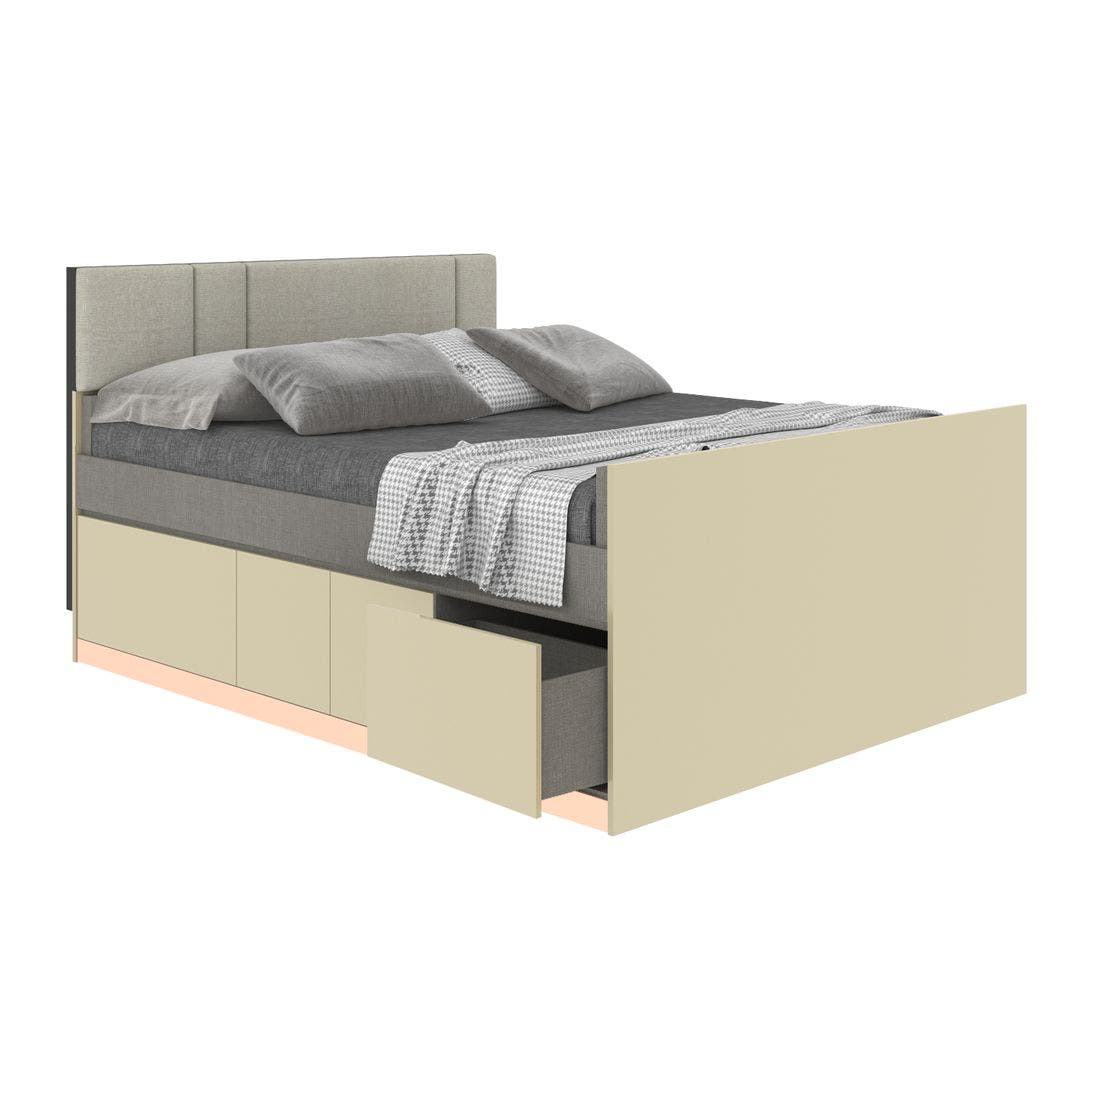 19203765-blisz-furniture-bedroom-furniture-beds-06